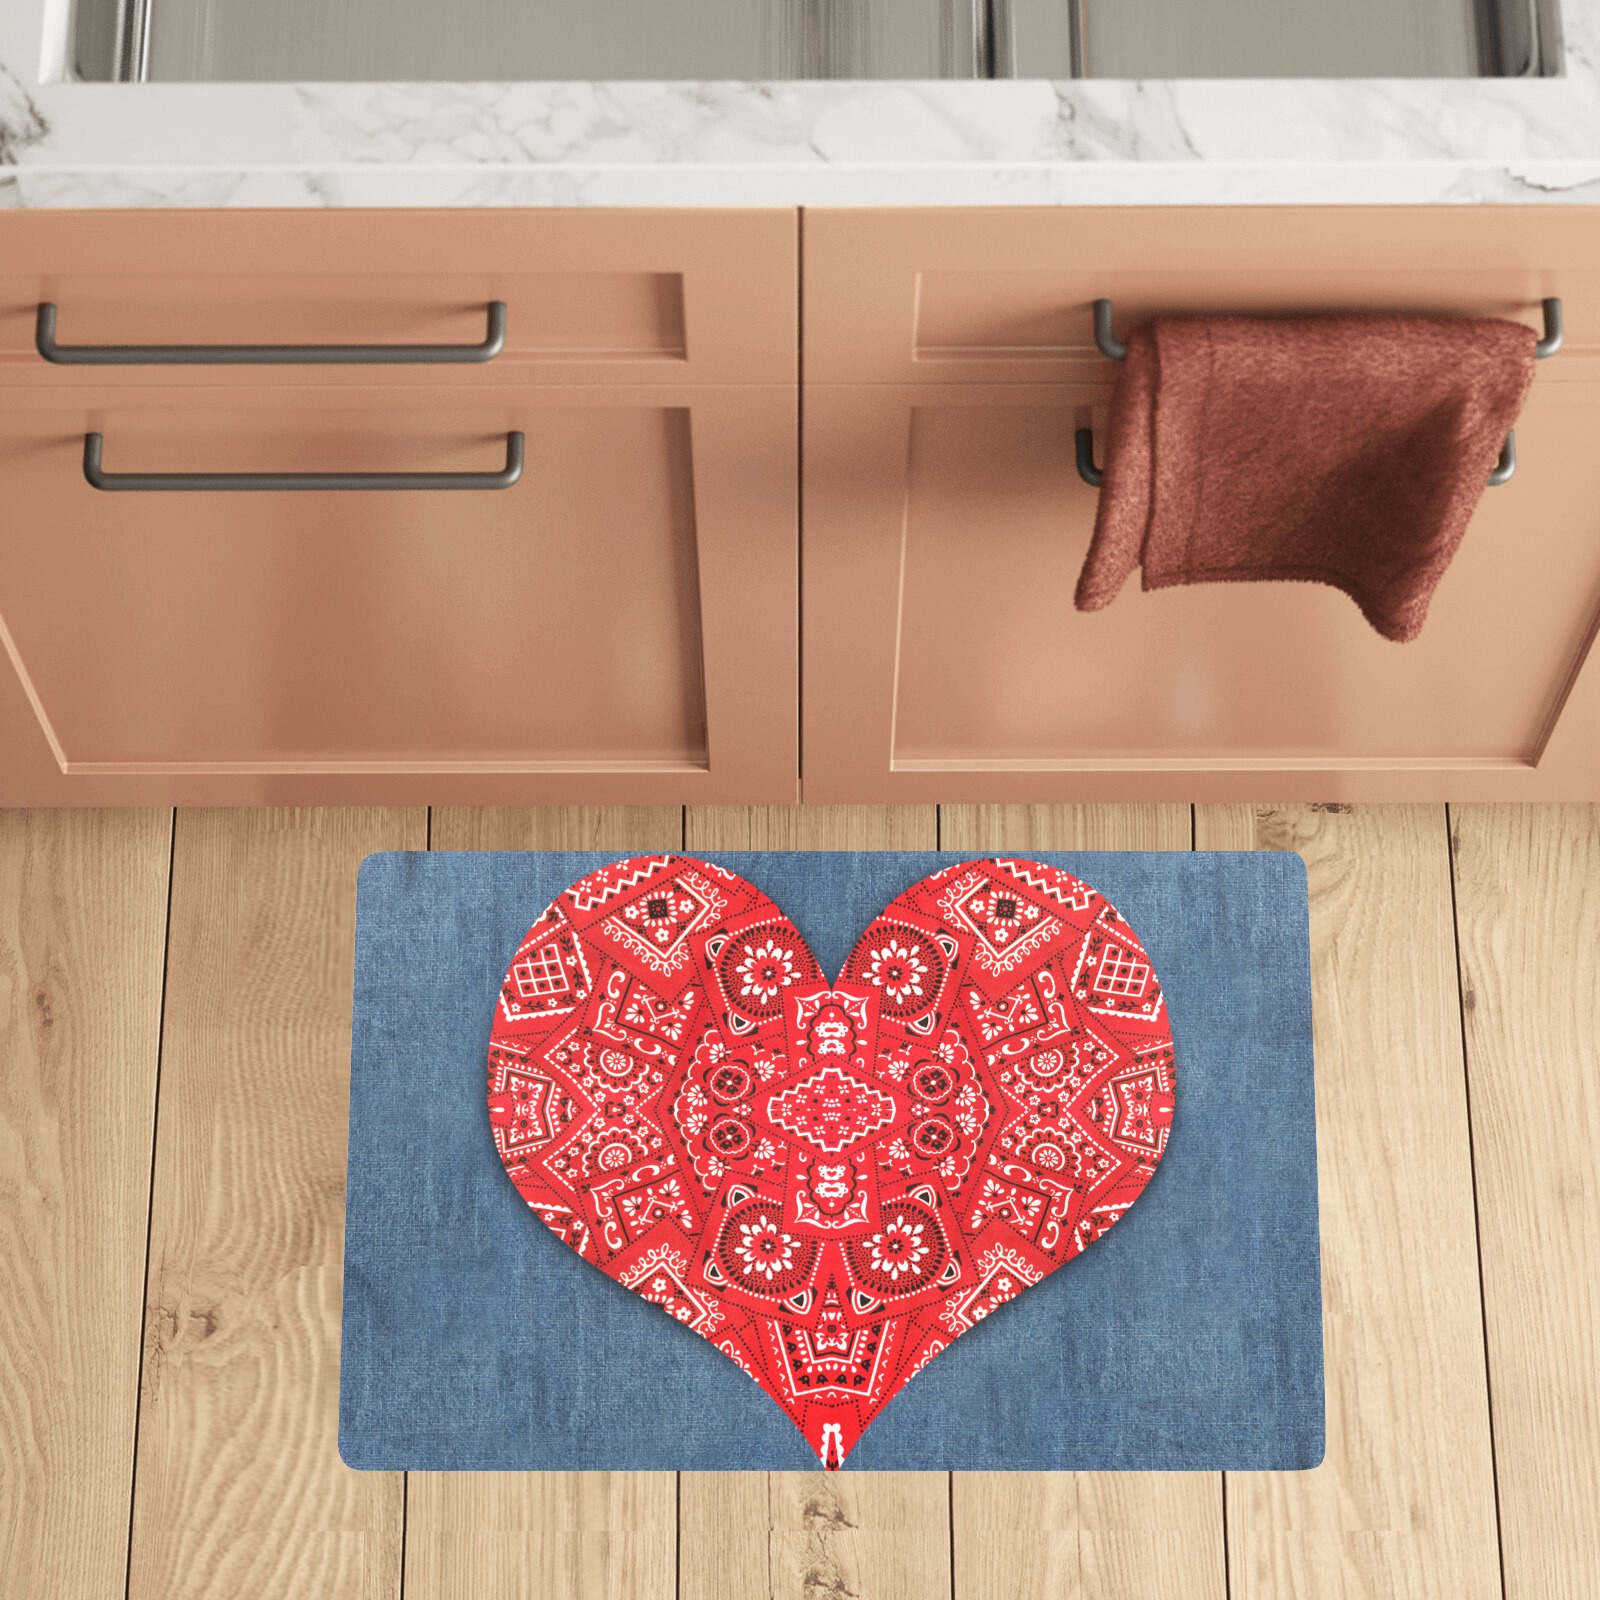 Bandana Heart Shape Kitchen Mat 28"x17"